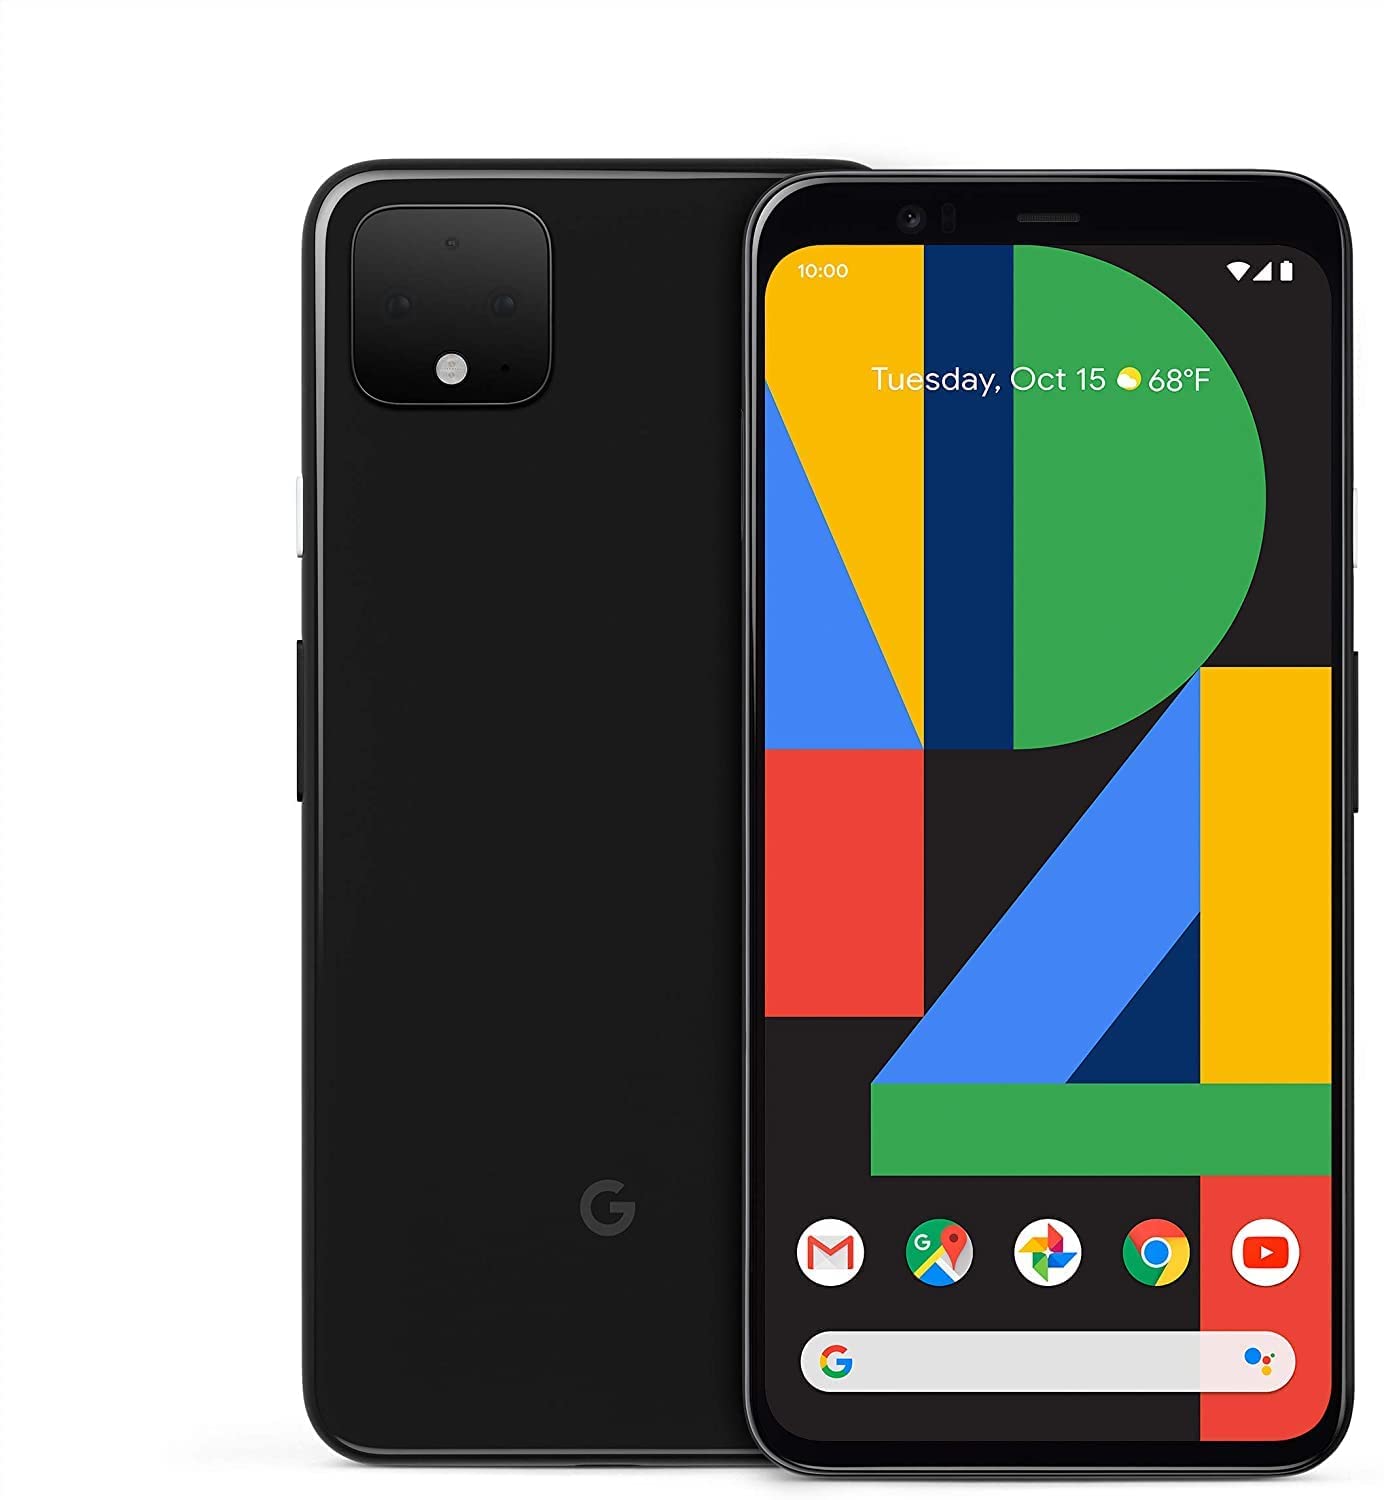 Google Pixel 4 64GB Just Black